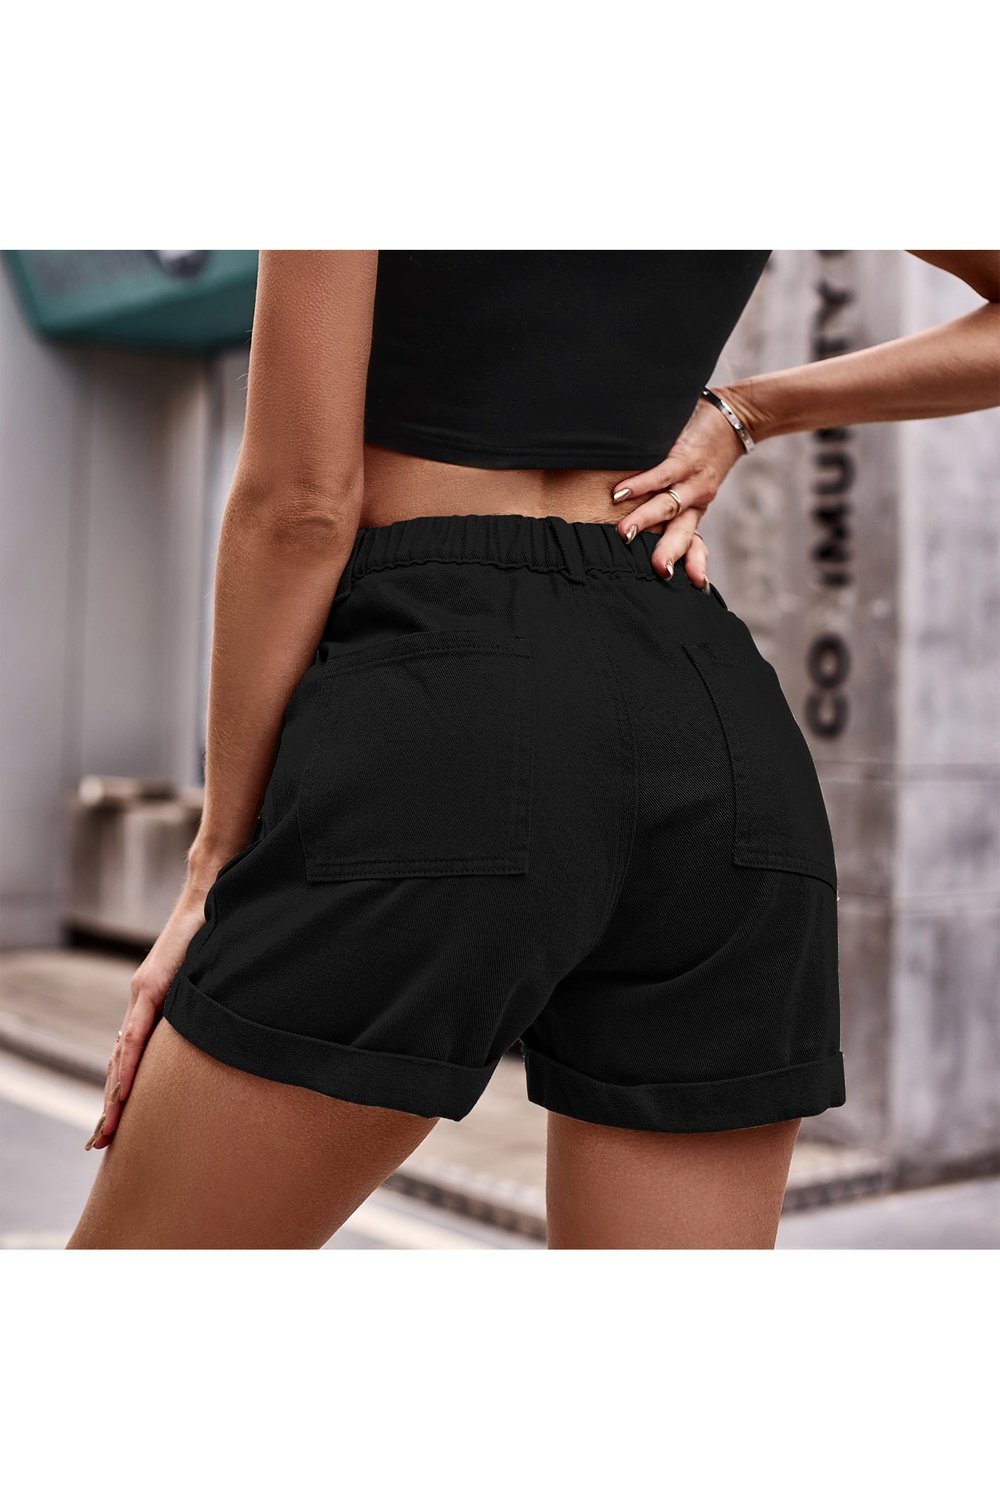 Cuffed Denim Shorts with Pockets - Denim Shorts - FITGGINS